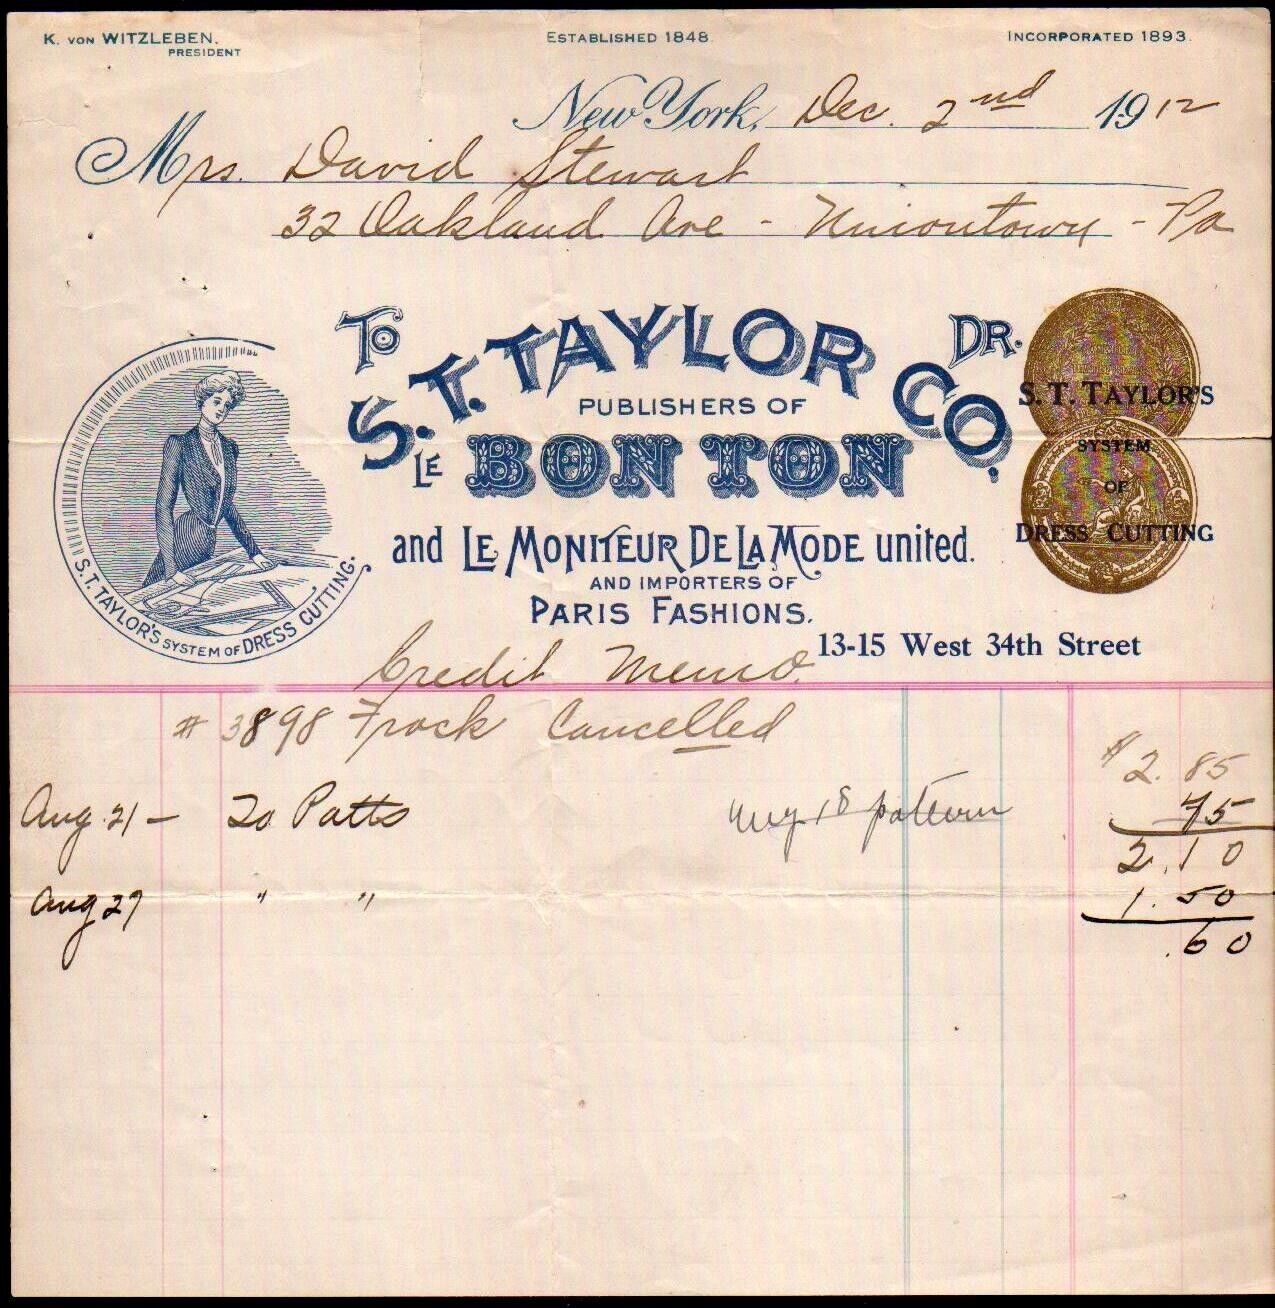 1912 New York - S T Taylor Co - Bonton - Paris Fashions - Color Letter Head Bill